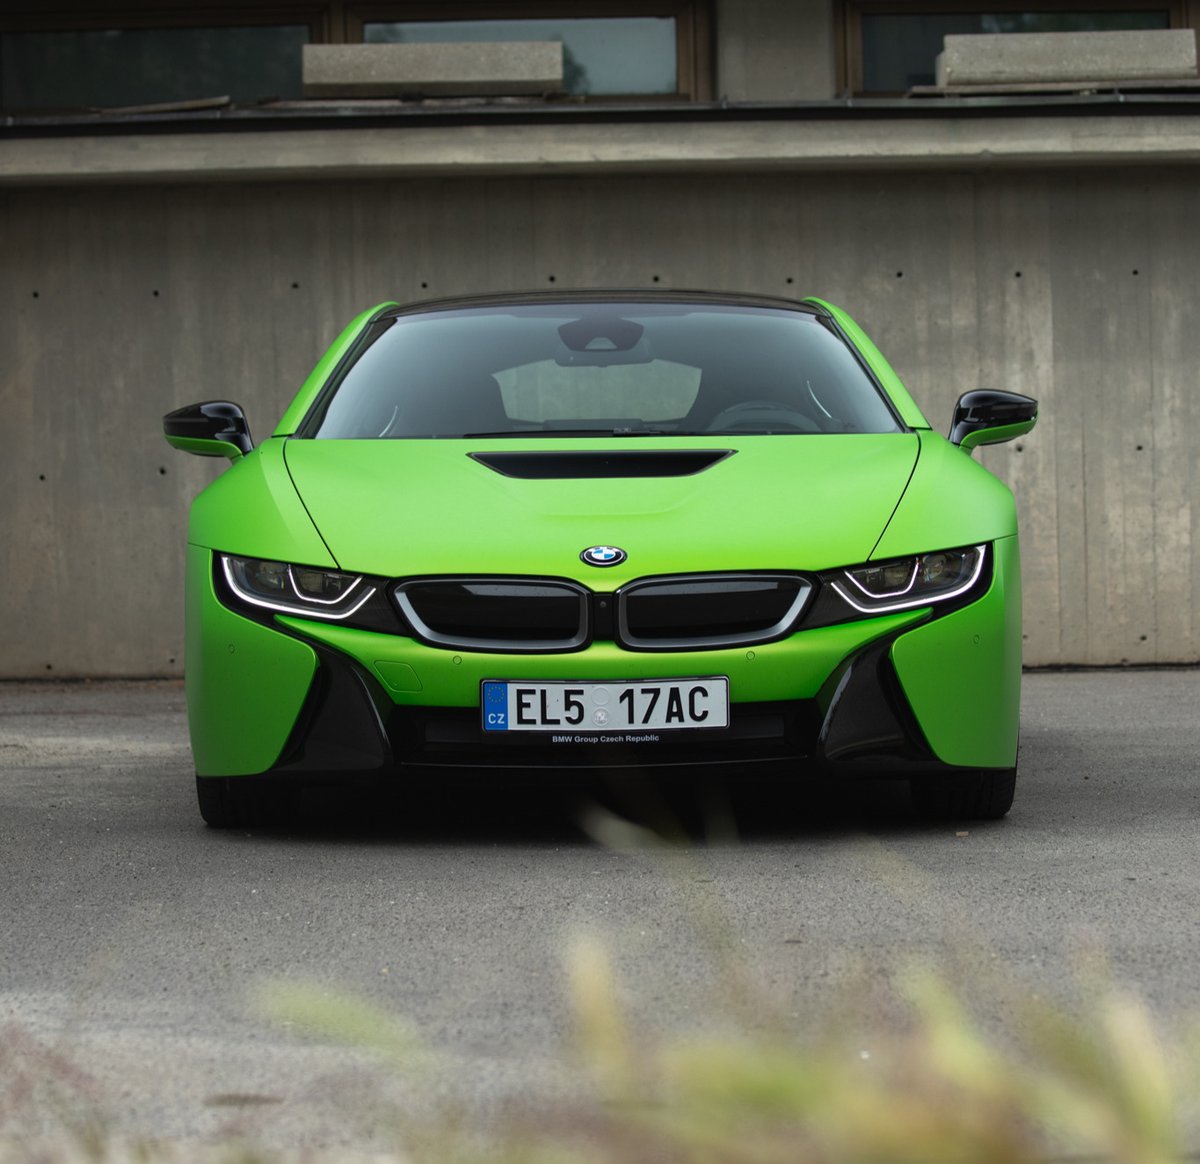 Nic pro introverty... Futuristický nestárnoucí design zelené 'žabky' 🐸 přitahuje pozornost celého okolí. Jste na to připraveni? 😉
#THEi8 #BMW #bmwczech #bmwcz #electriccar #i8